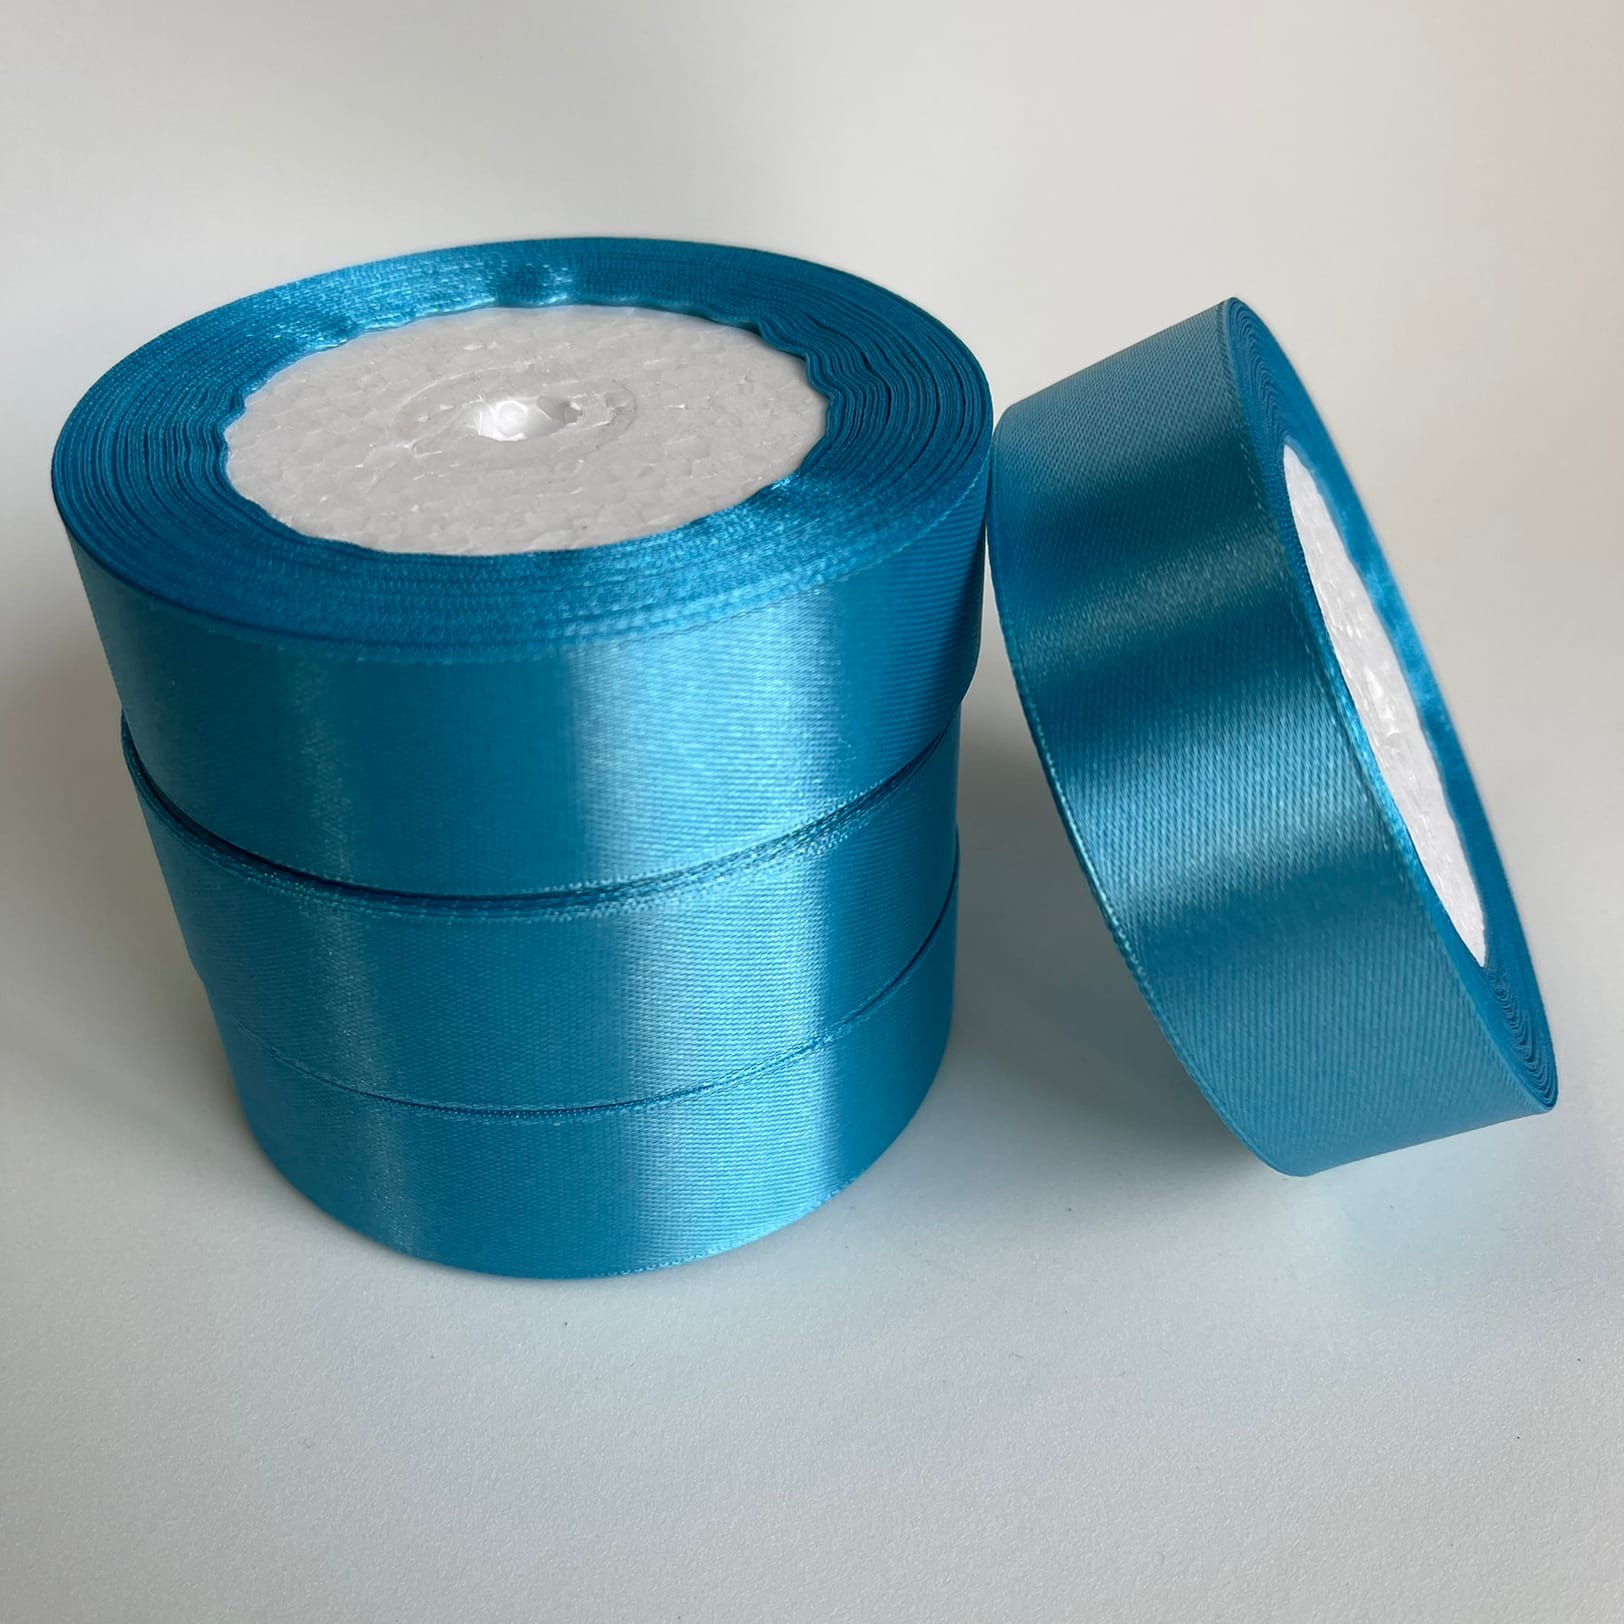 Купить ленту от производителя. Лента атласная 25 мм. Лента атласная 20 мм голубой. Синяя лента в рулоне. Декоративная водостойкая лента 20 миллиметров синего цвета.